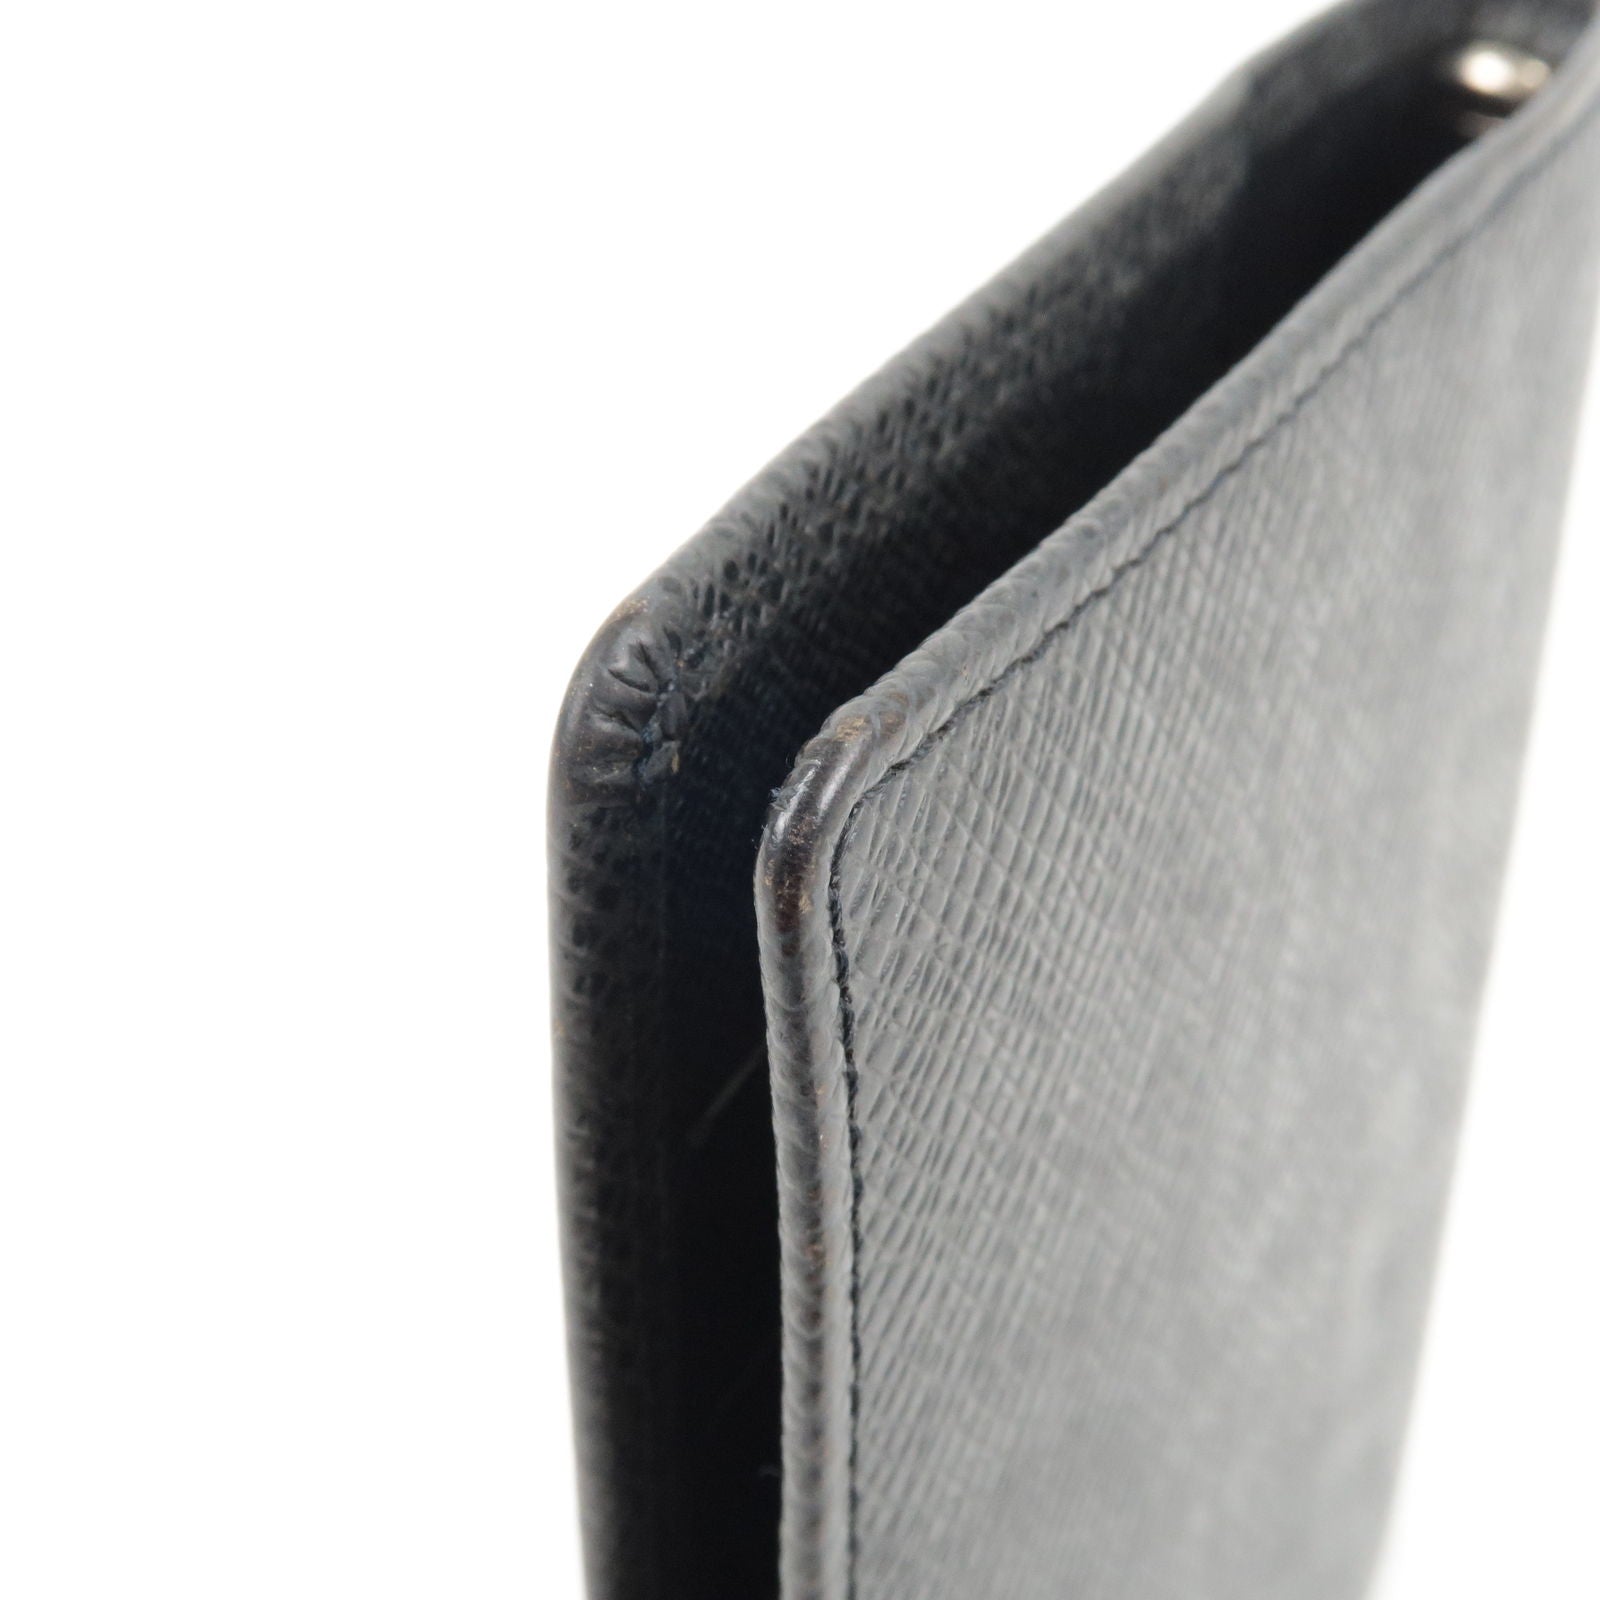 Louis Vuitton Black Taiga Leather Agenda PM Wallet